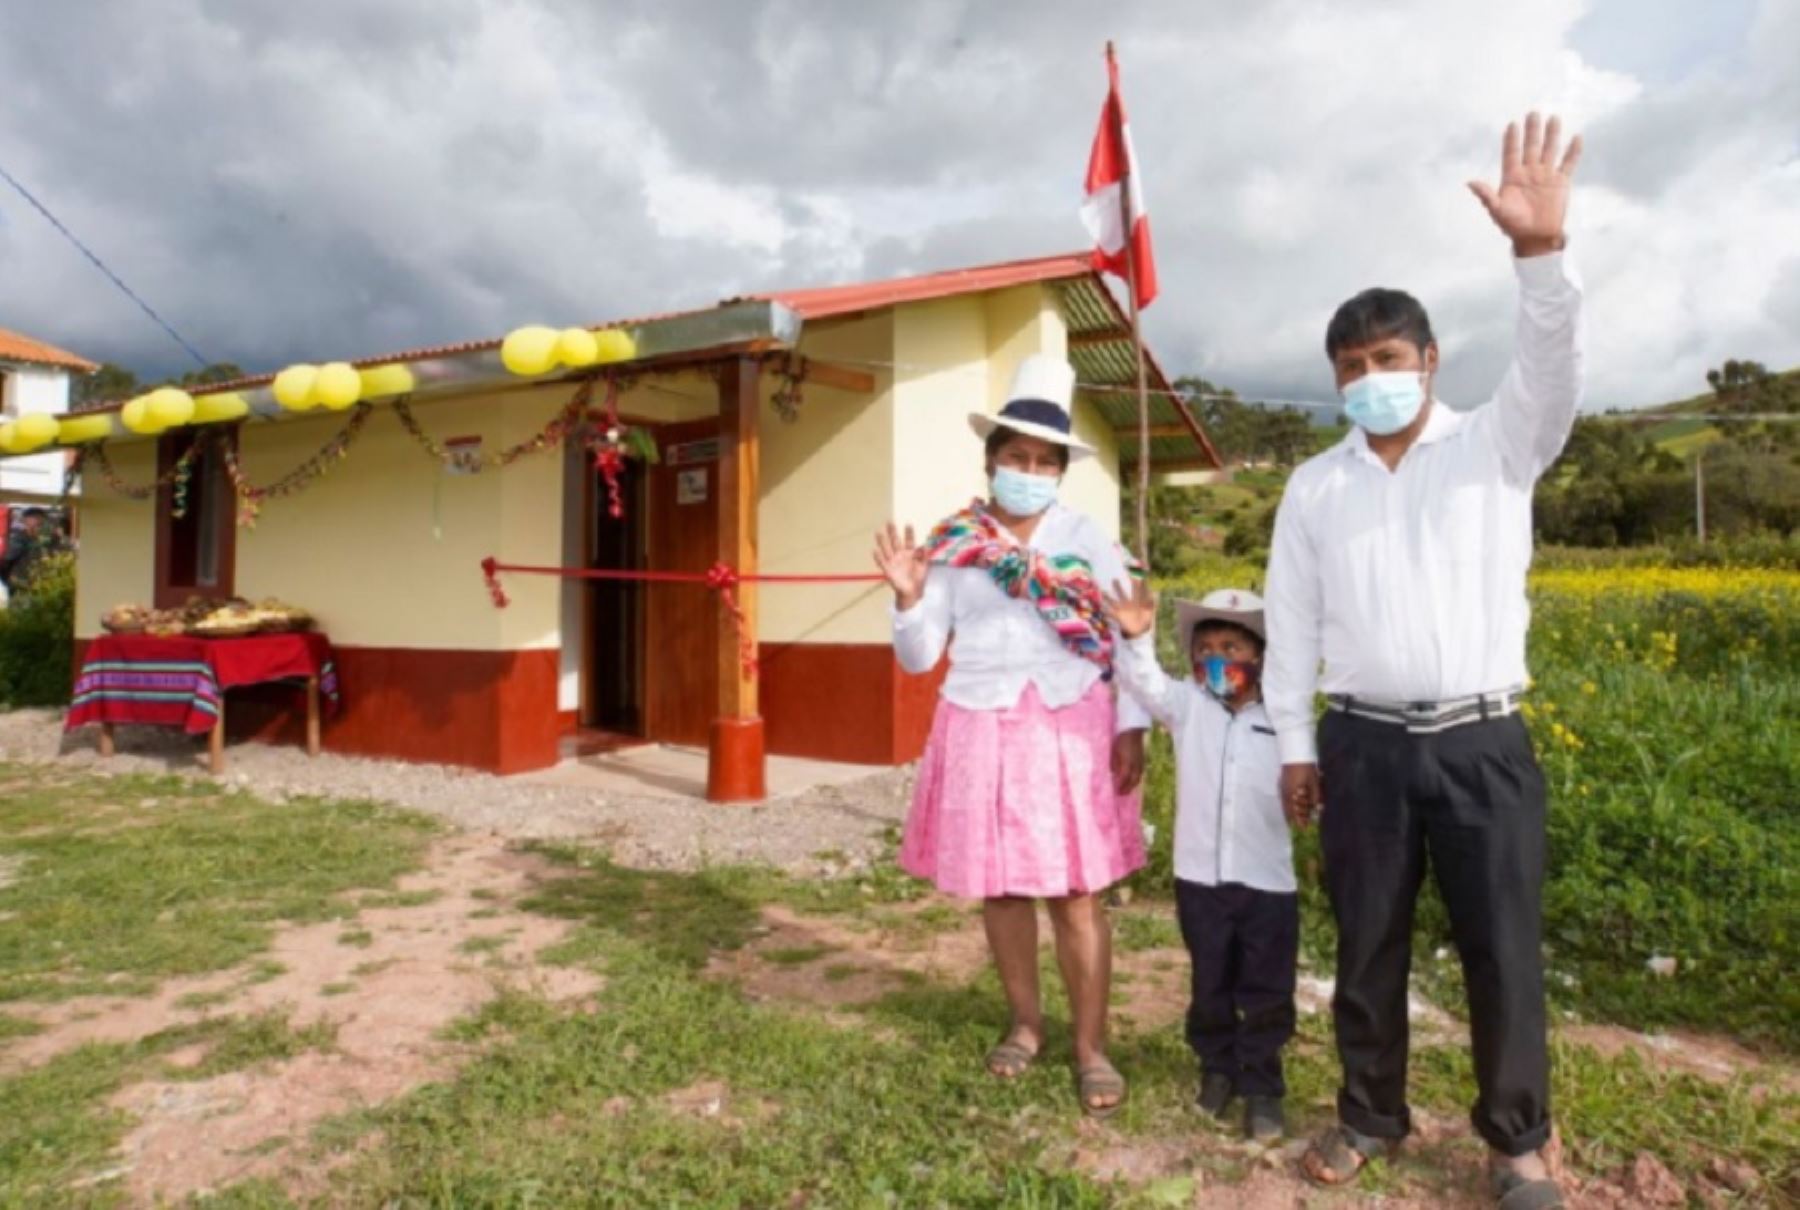 El Ministerio de Vivienda, Construcción y Saneamiento está próximo a ejecutar un total de 7,138 viviendas bioclimáticas Sumaq Wasi en la región Cusco para las familias afectadas por las heladas, y se prevé entregarlas en el segundo semestre del año, en beneficio de más de 28,500 personas. Foto: Ministerio de Vivienda, Construcción y Saneamiento.